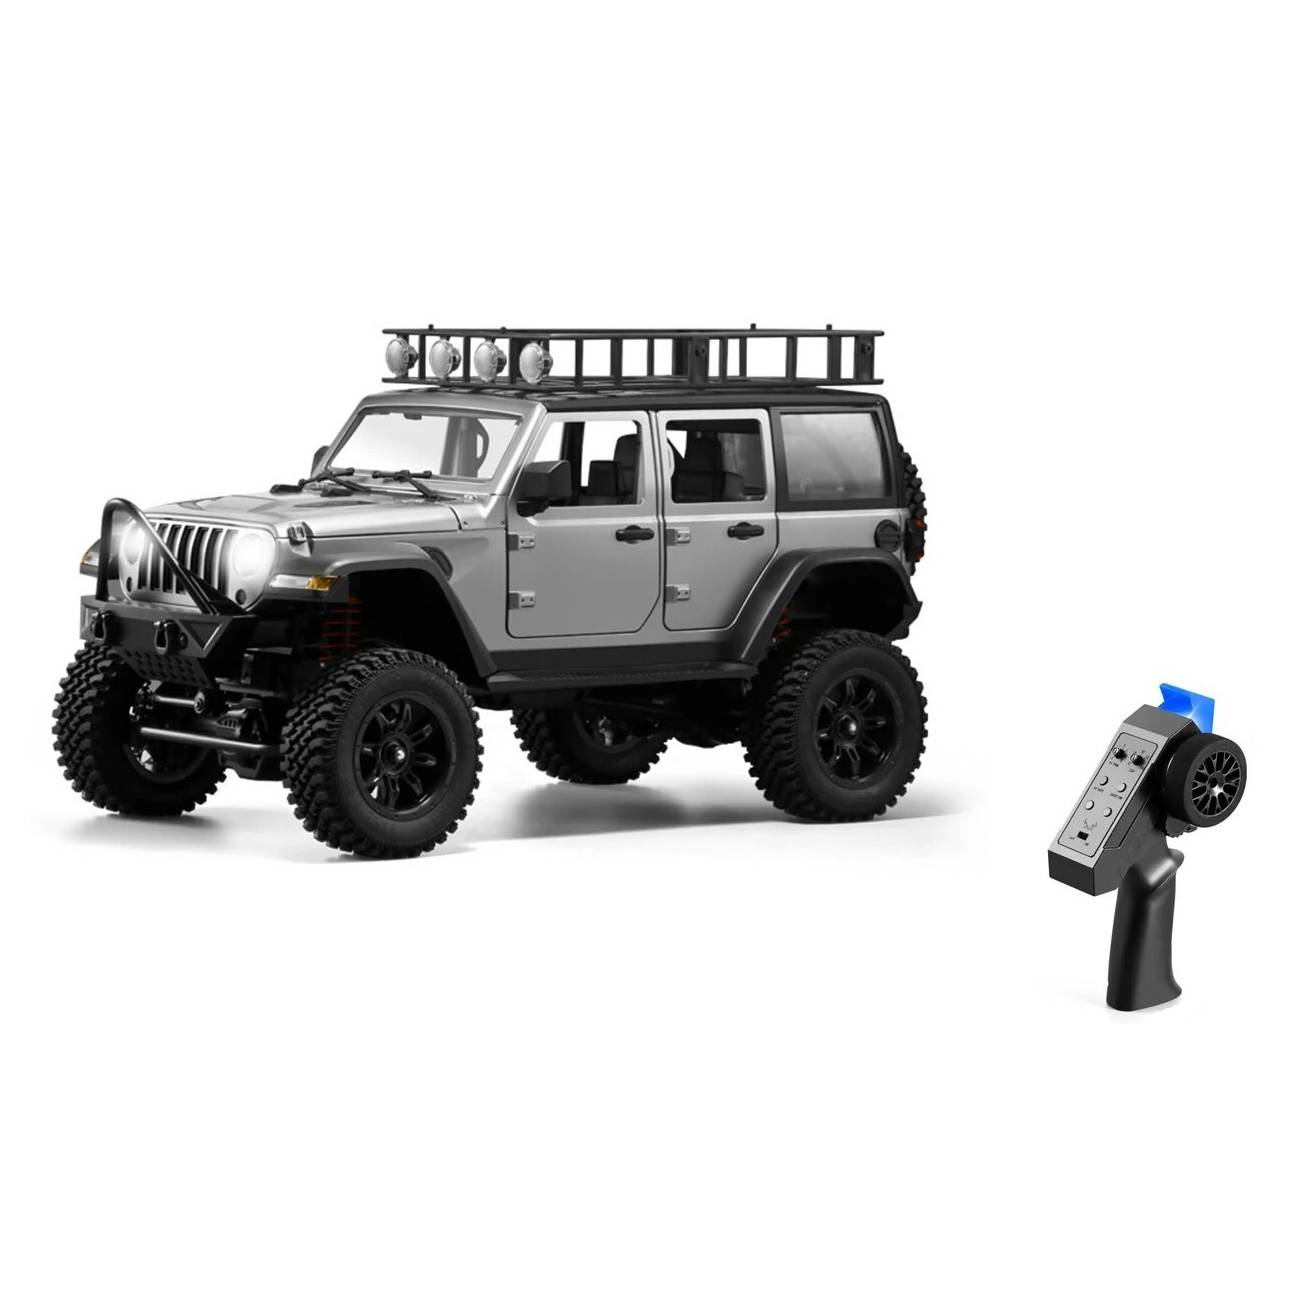 Радиоуправляемый внедорожник MN MODEL Jeep Wrangler 4WD масштаб 1:12 2,4G MN-128, silver